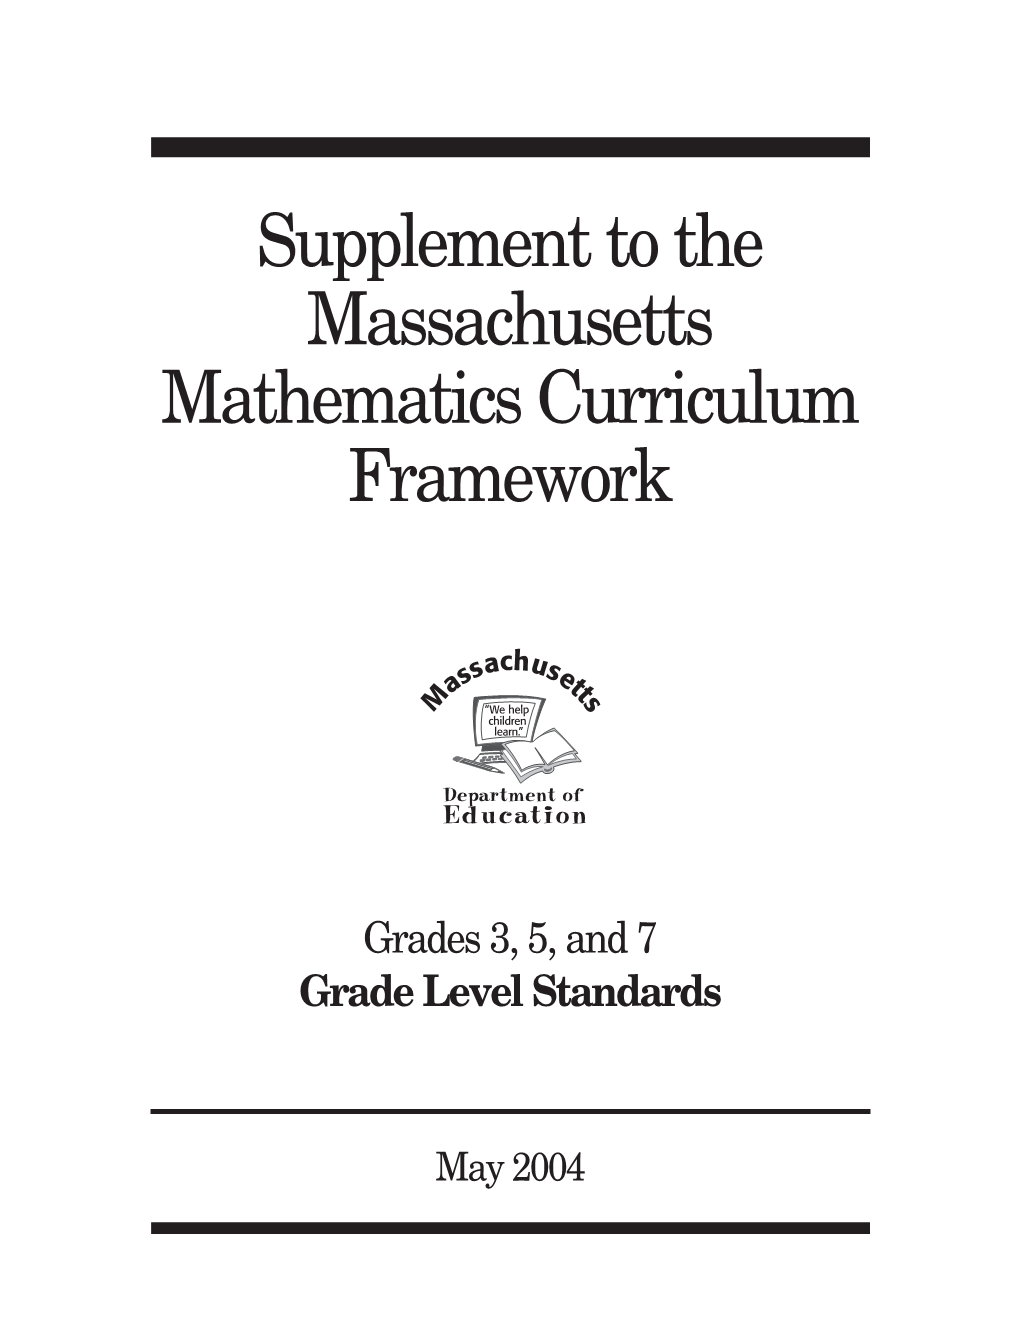 Supplement to the Massachusetts Mathematics Curriculum Framework